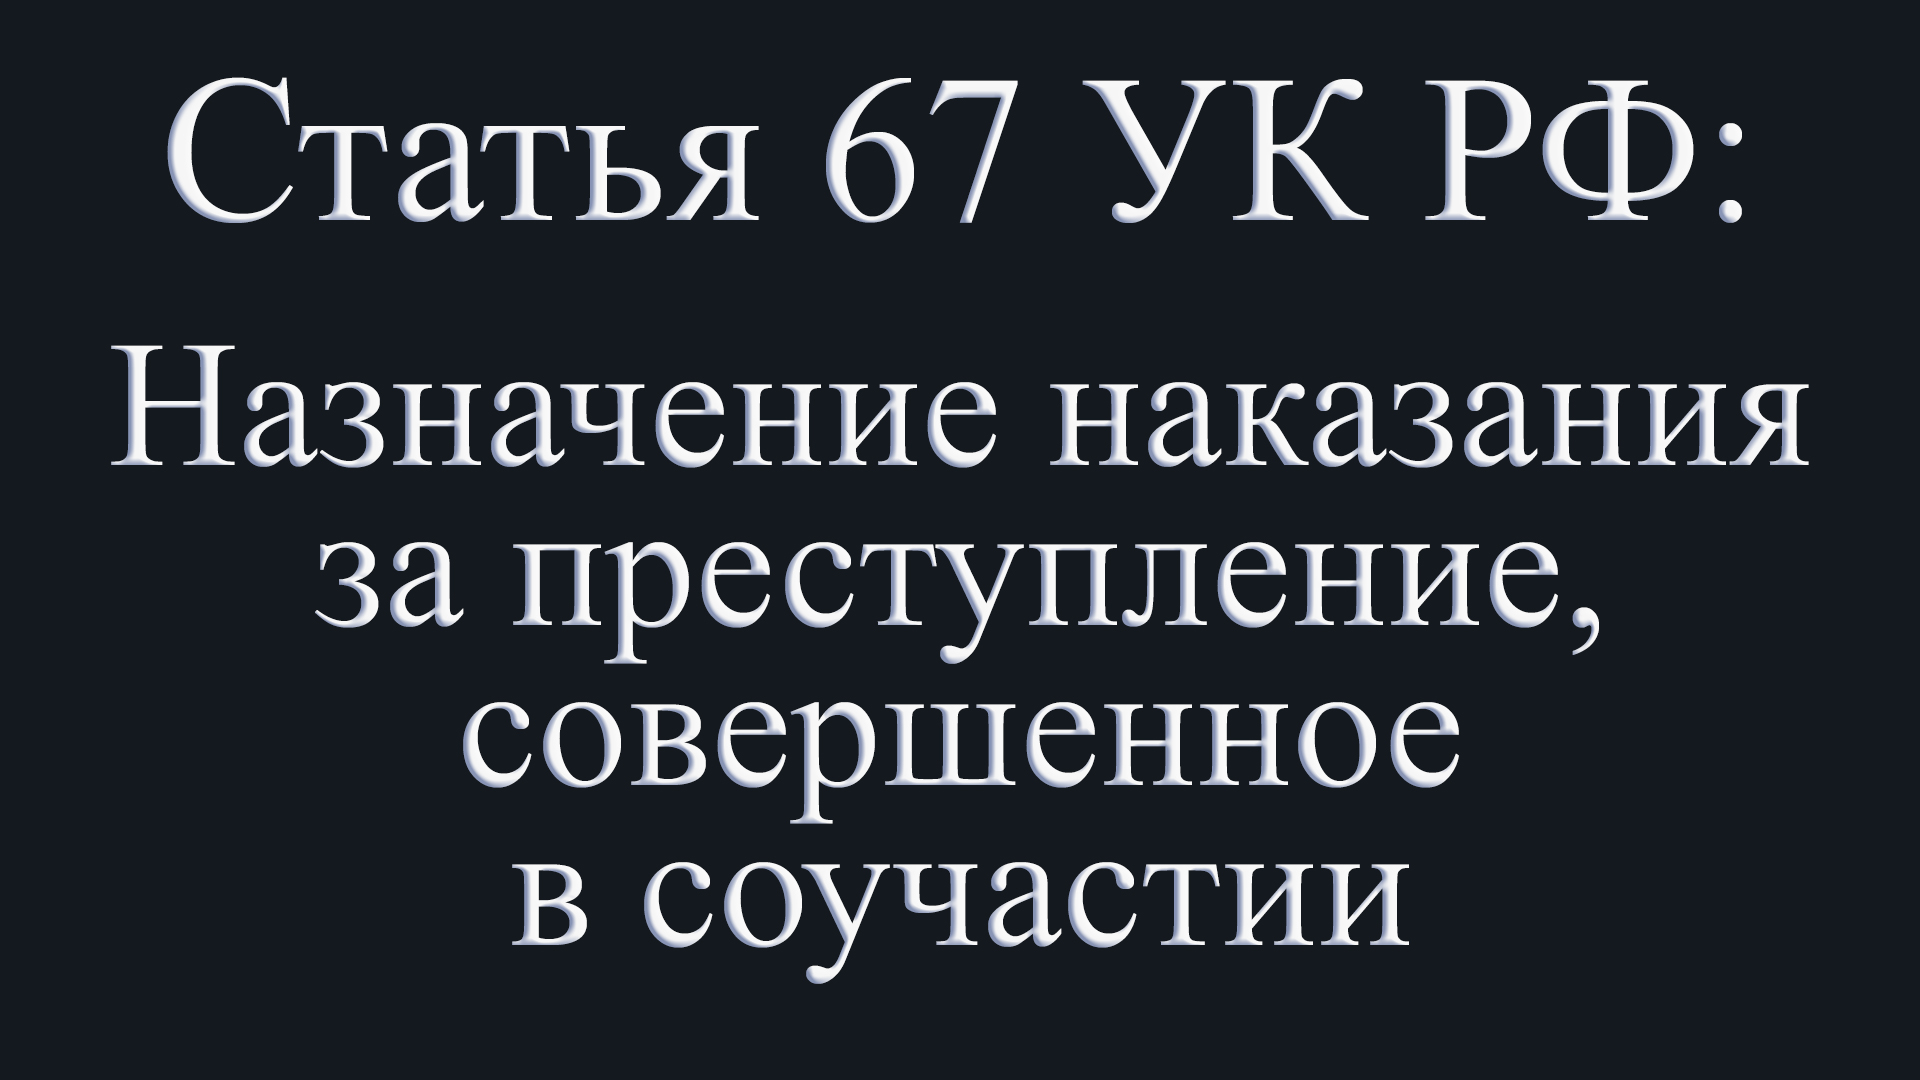 Статья 67 УК РФ: Назначение наказания за преступление, совершенное в соучастии.